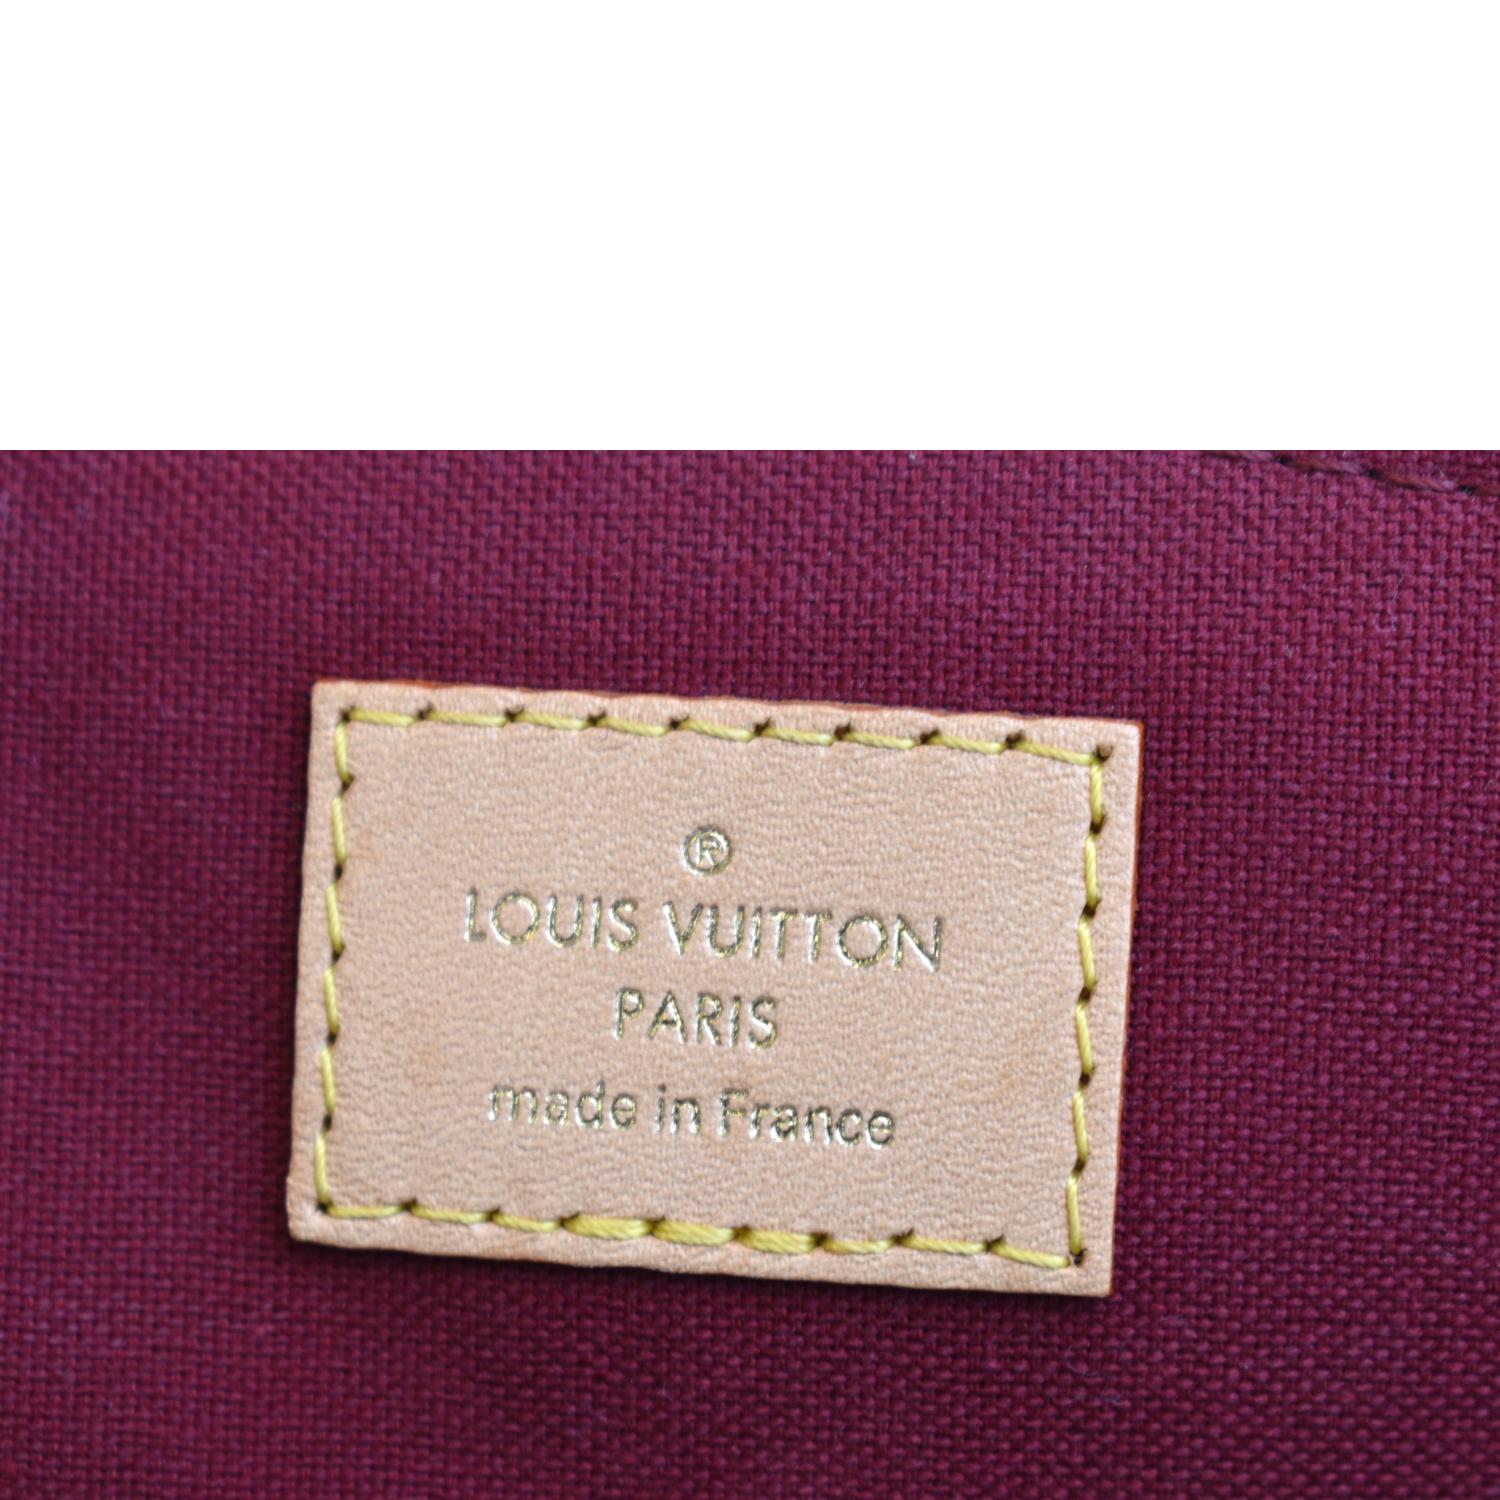 LOUIS VUITTON Petit Palais Monogram. Size